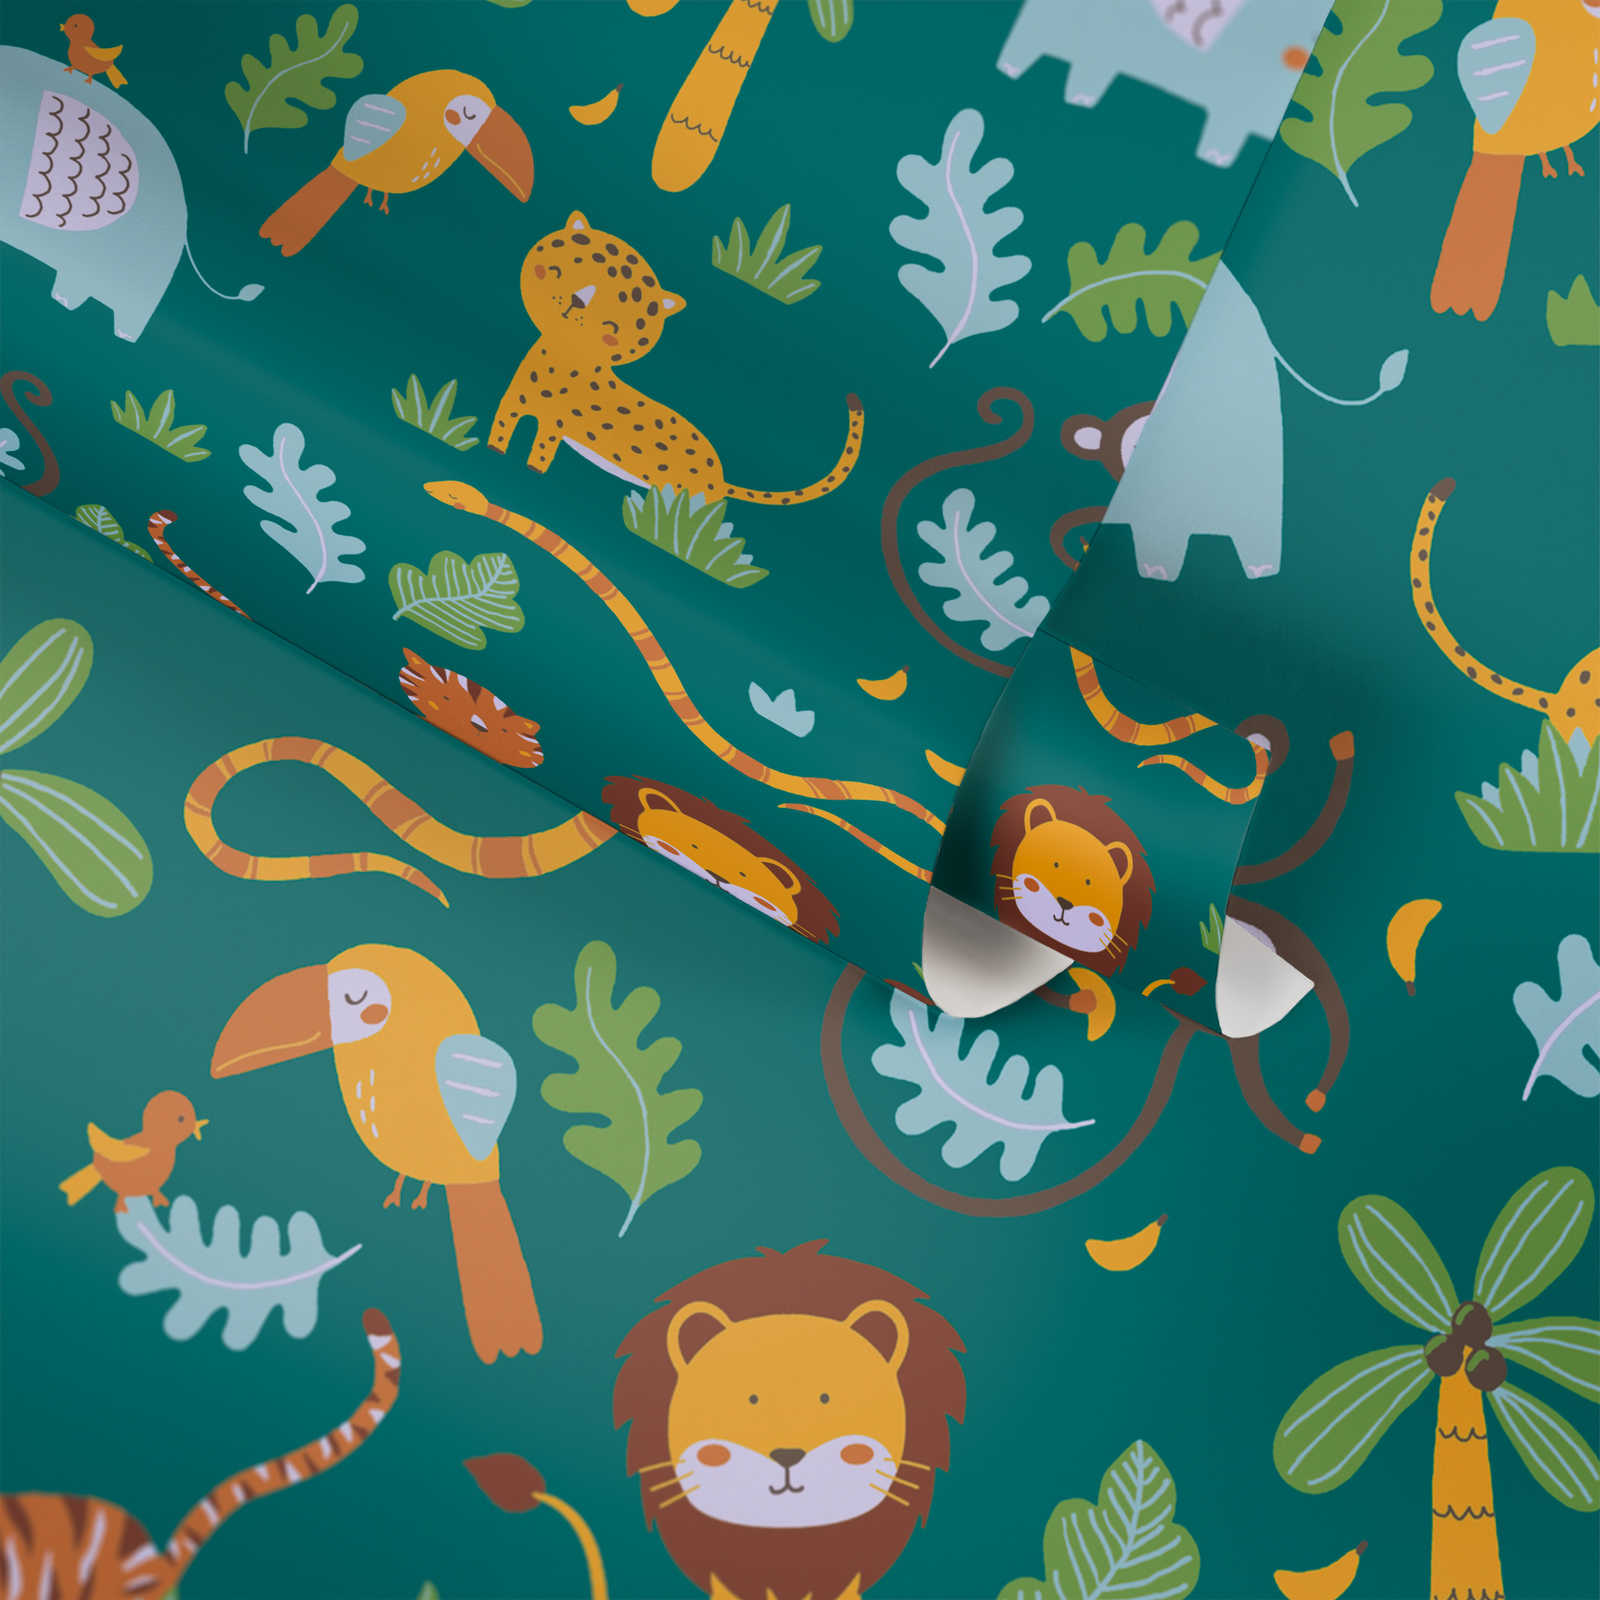             Kinderbehang jungle dieren - groen, geel, blauw
        